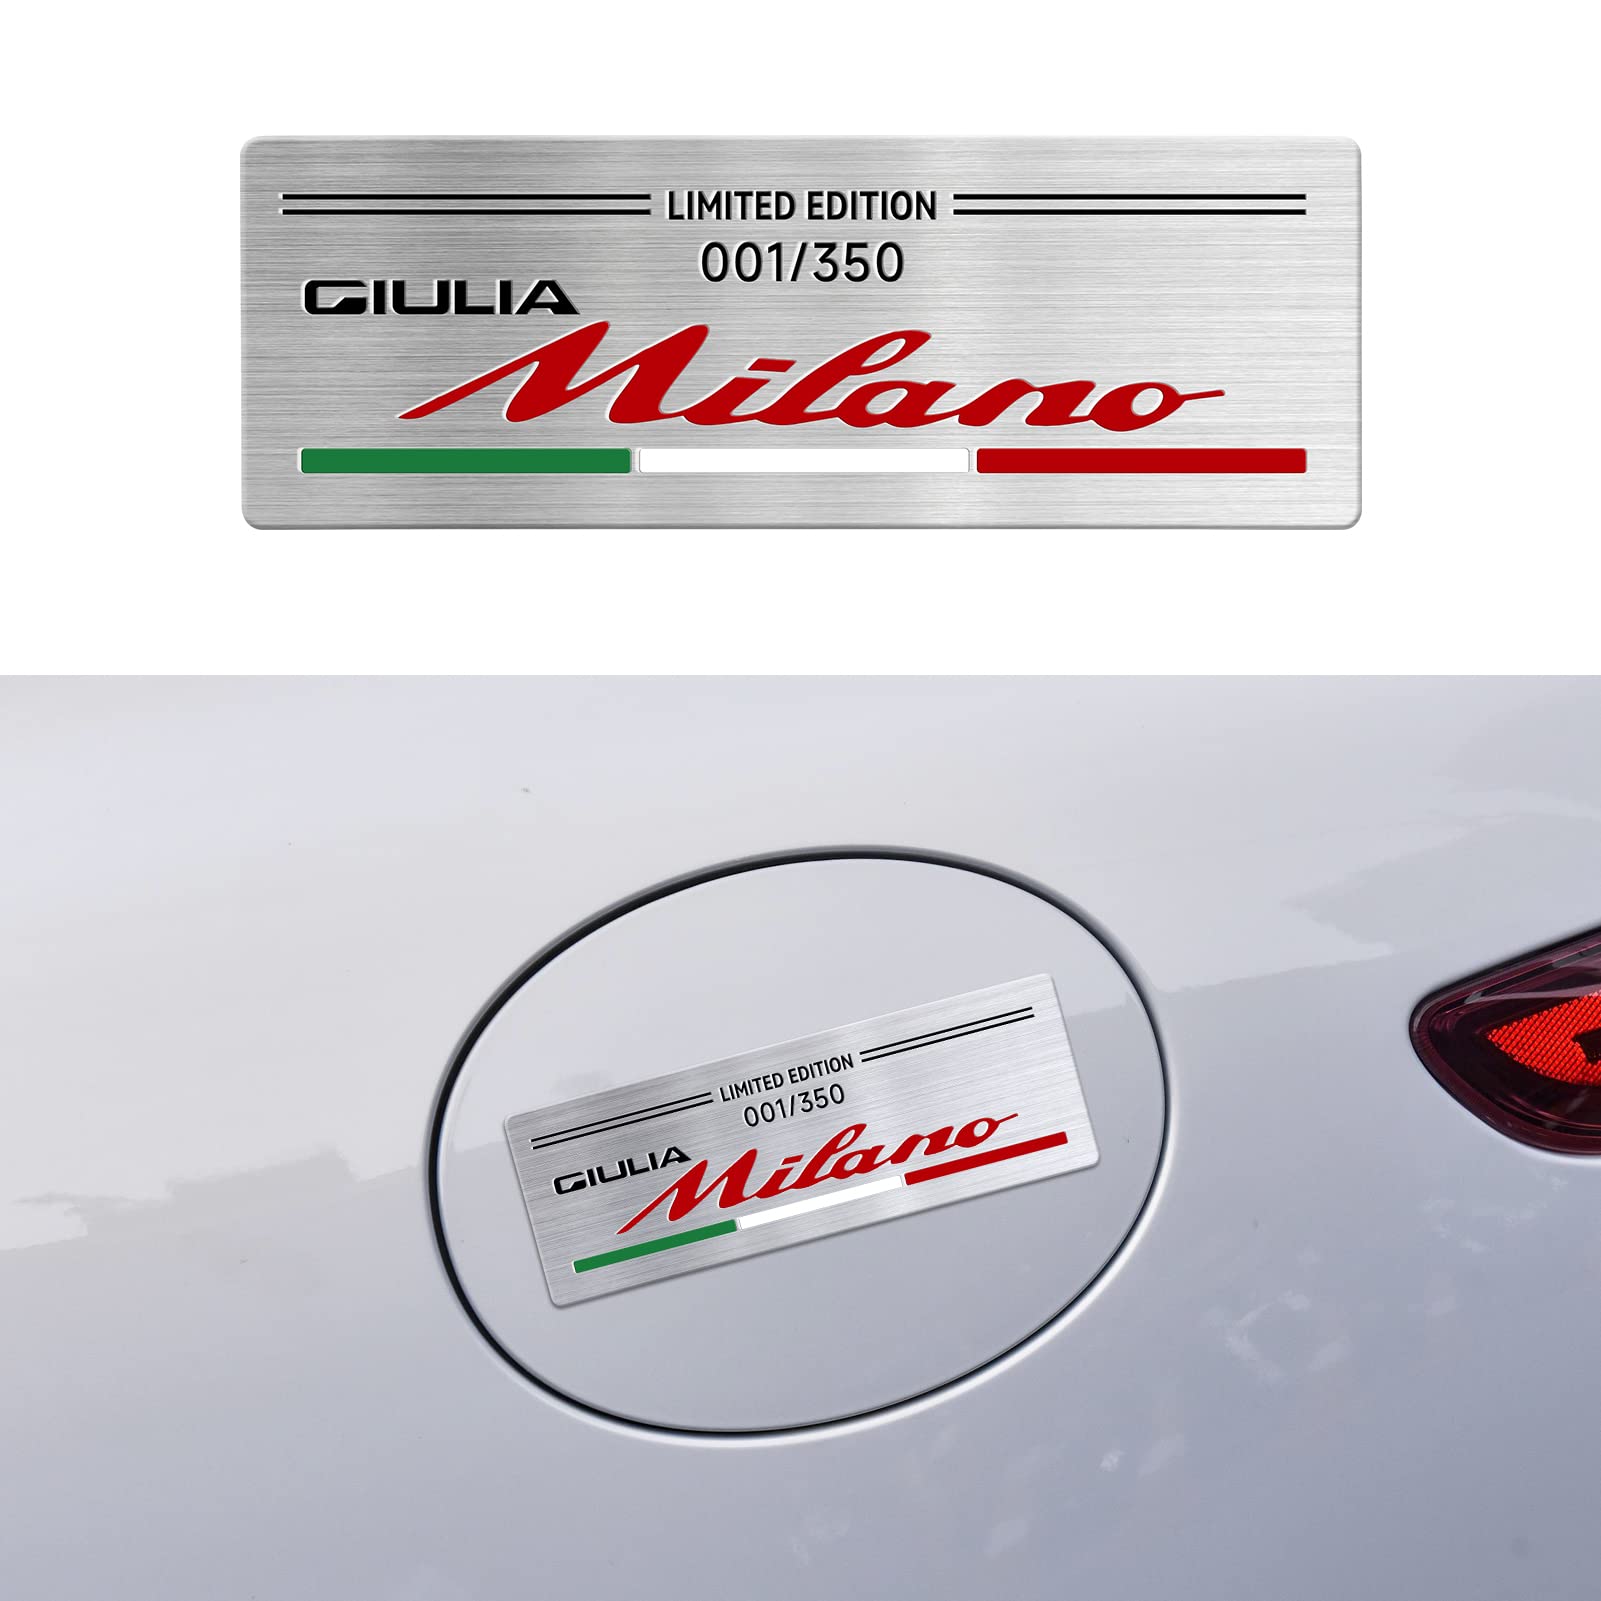 Abzeichen Aufkleber Special Limited Edition Milano Edition Logo Dekoration Kompatibel Mit Alfa Romeo Giulia Mito Stelvio GT 147 156 159 166 Car Styling. (A) von OYDDL